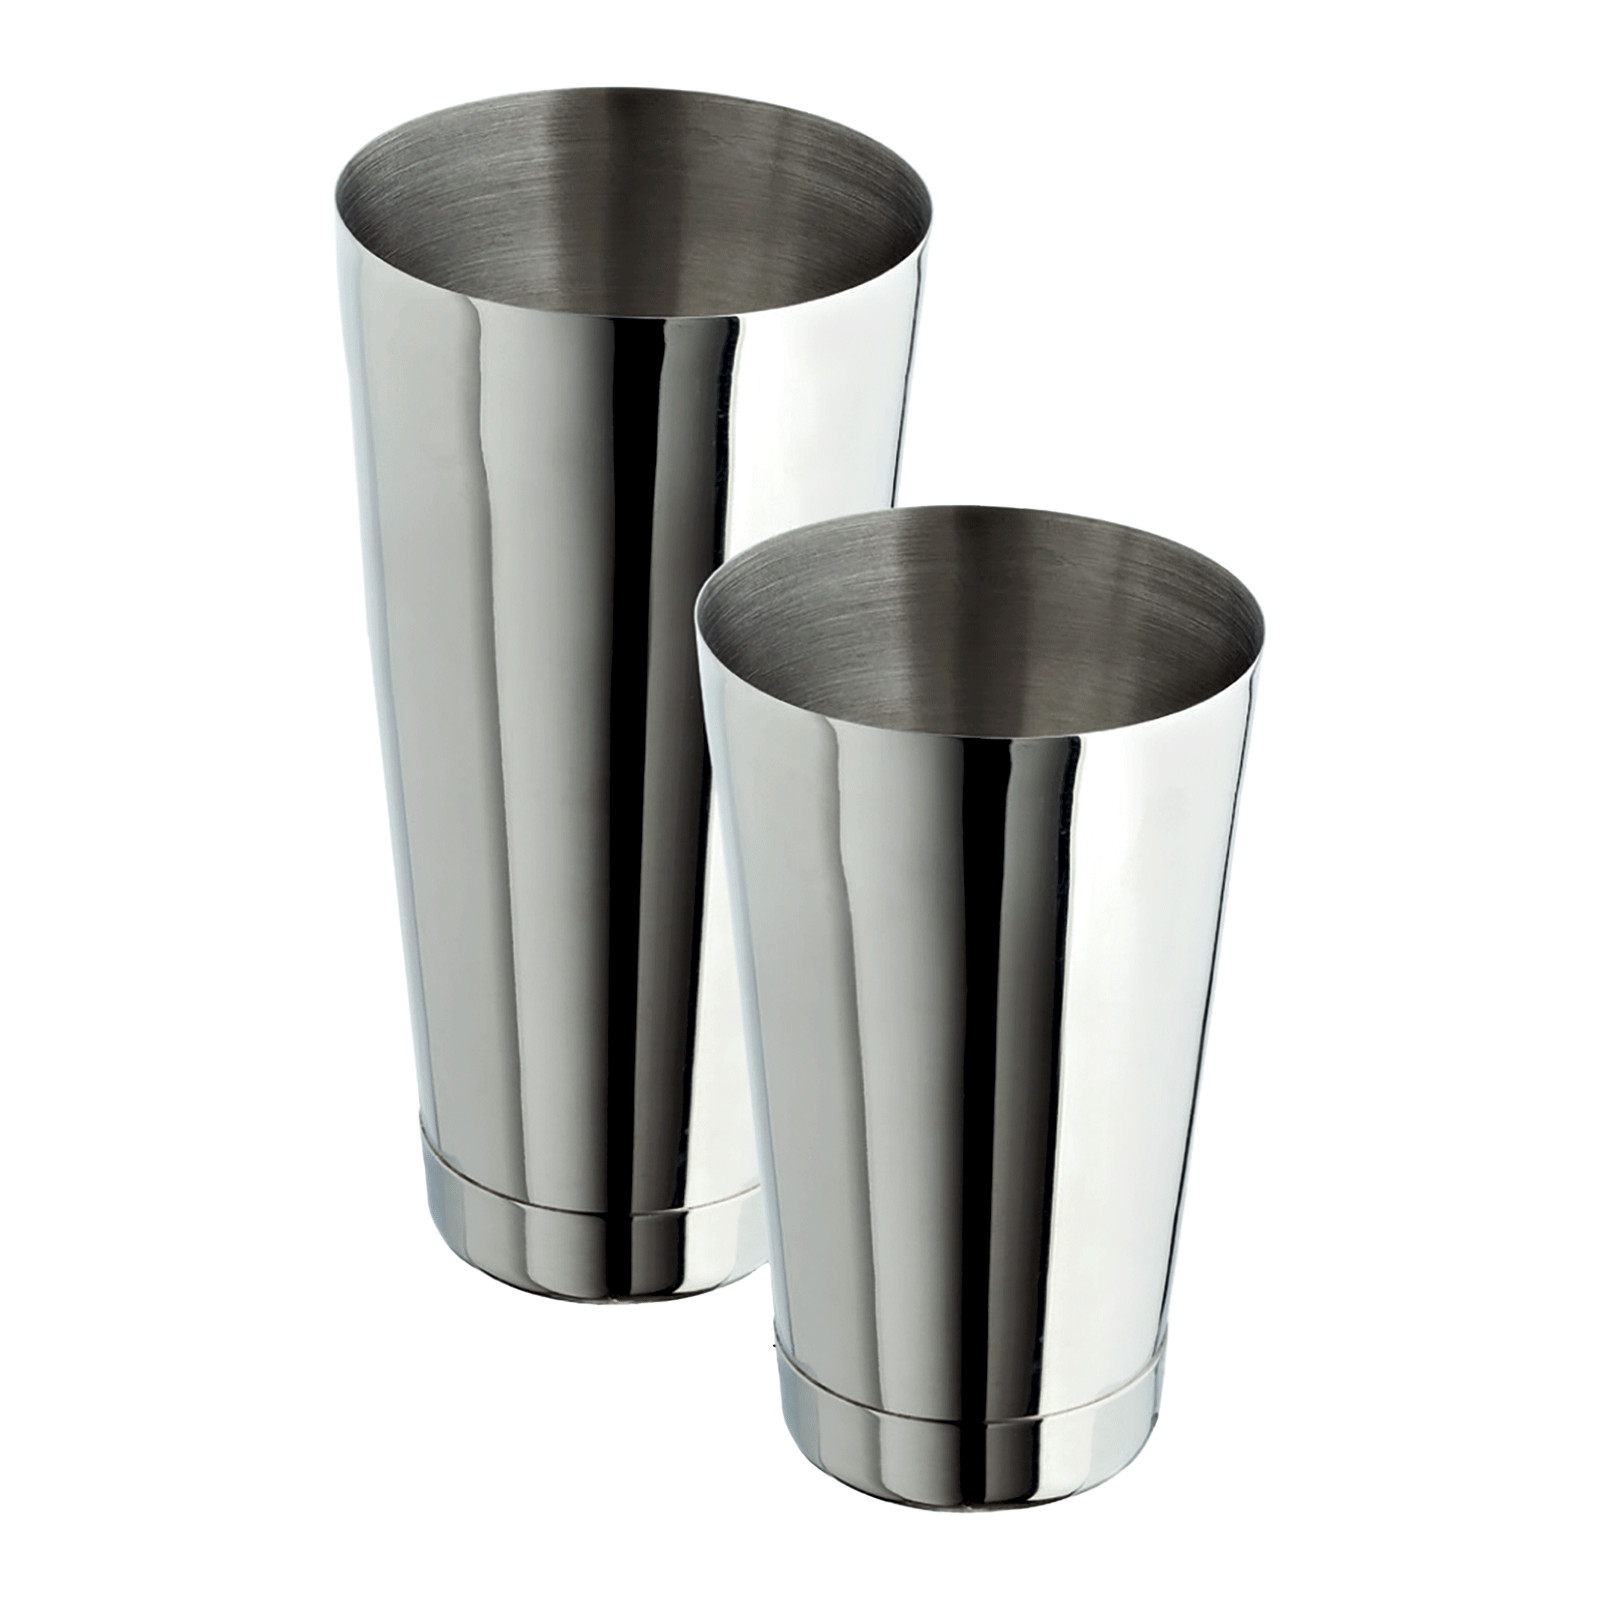 Boston shaker in acciaio - Peso -g- 428 - Materiale acciaio inox - Capacità -ml- 830 - 